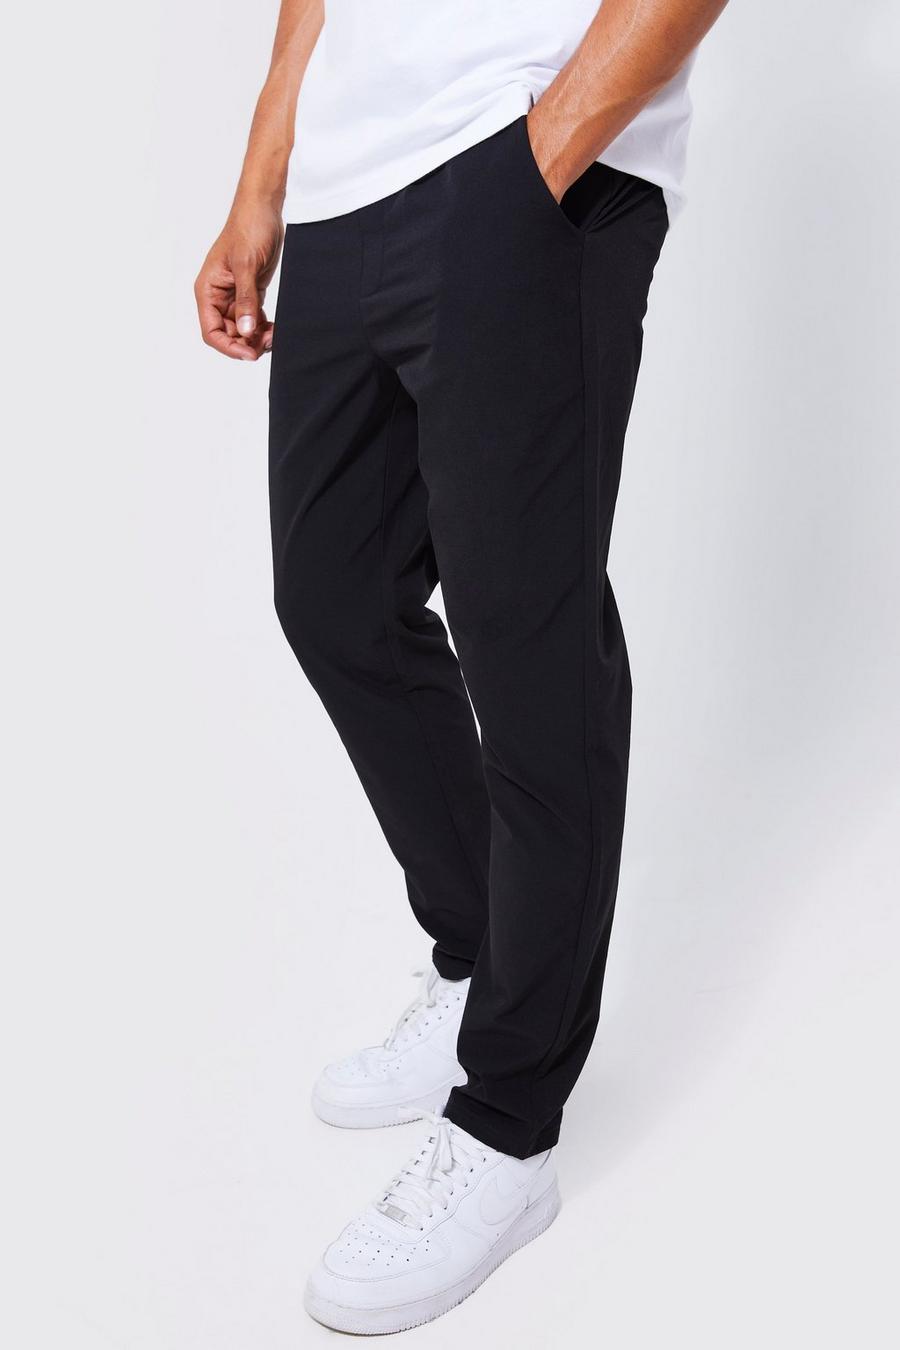 Pantalón técnico ligero ajustado elástico con cintura elástica, Black